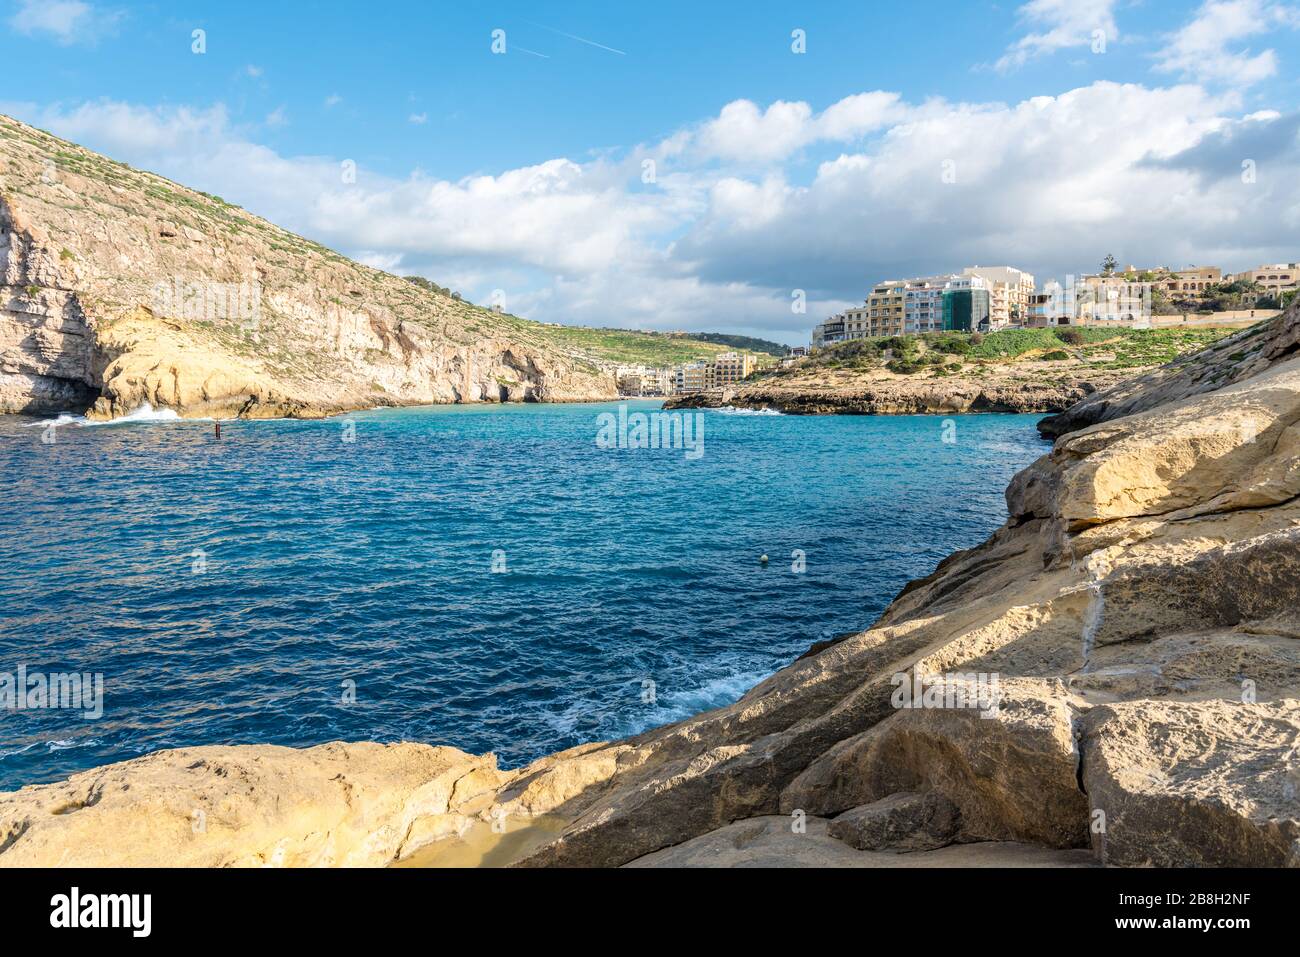 Mari blu chiari a Xlendi Gozo, Malta Foto Stock